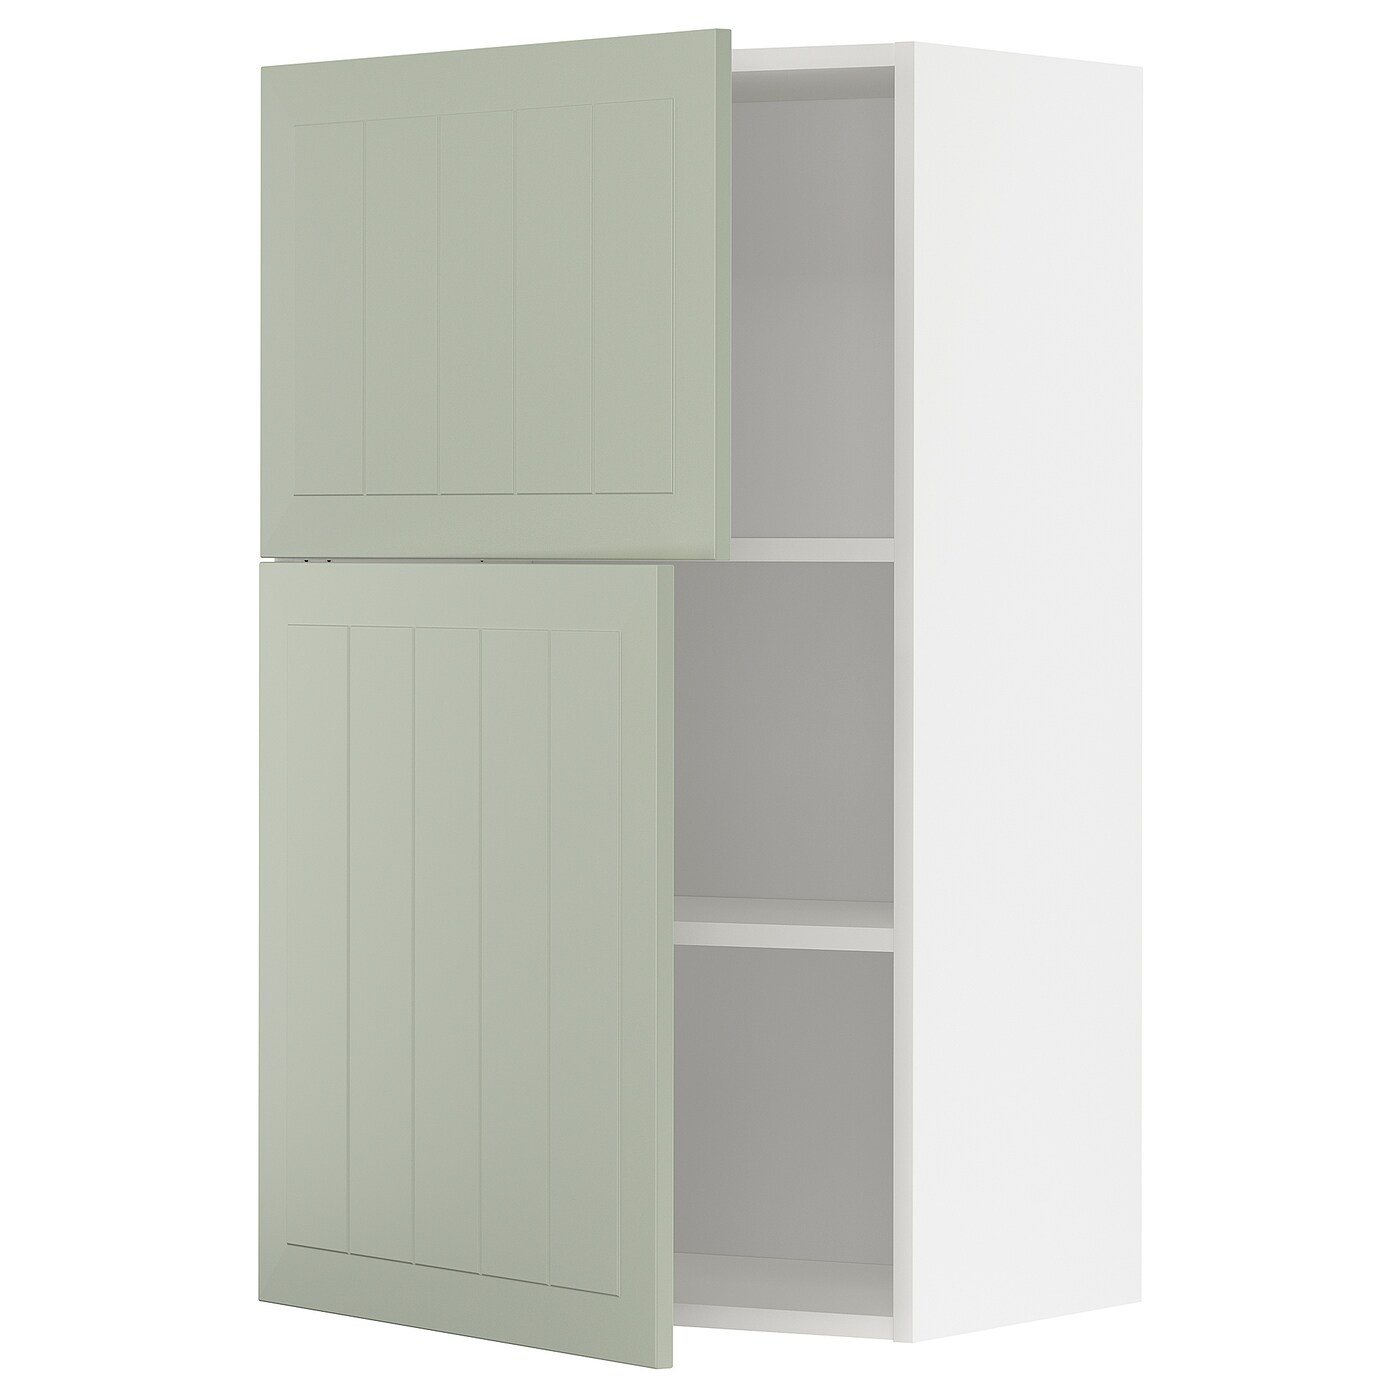 Навесной шкаф с полкой - METOD IKEA/ МЕТОД ИКЕА, 100х60 см,  белый/зеленый